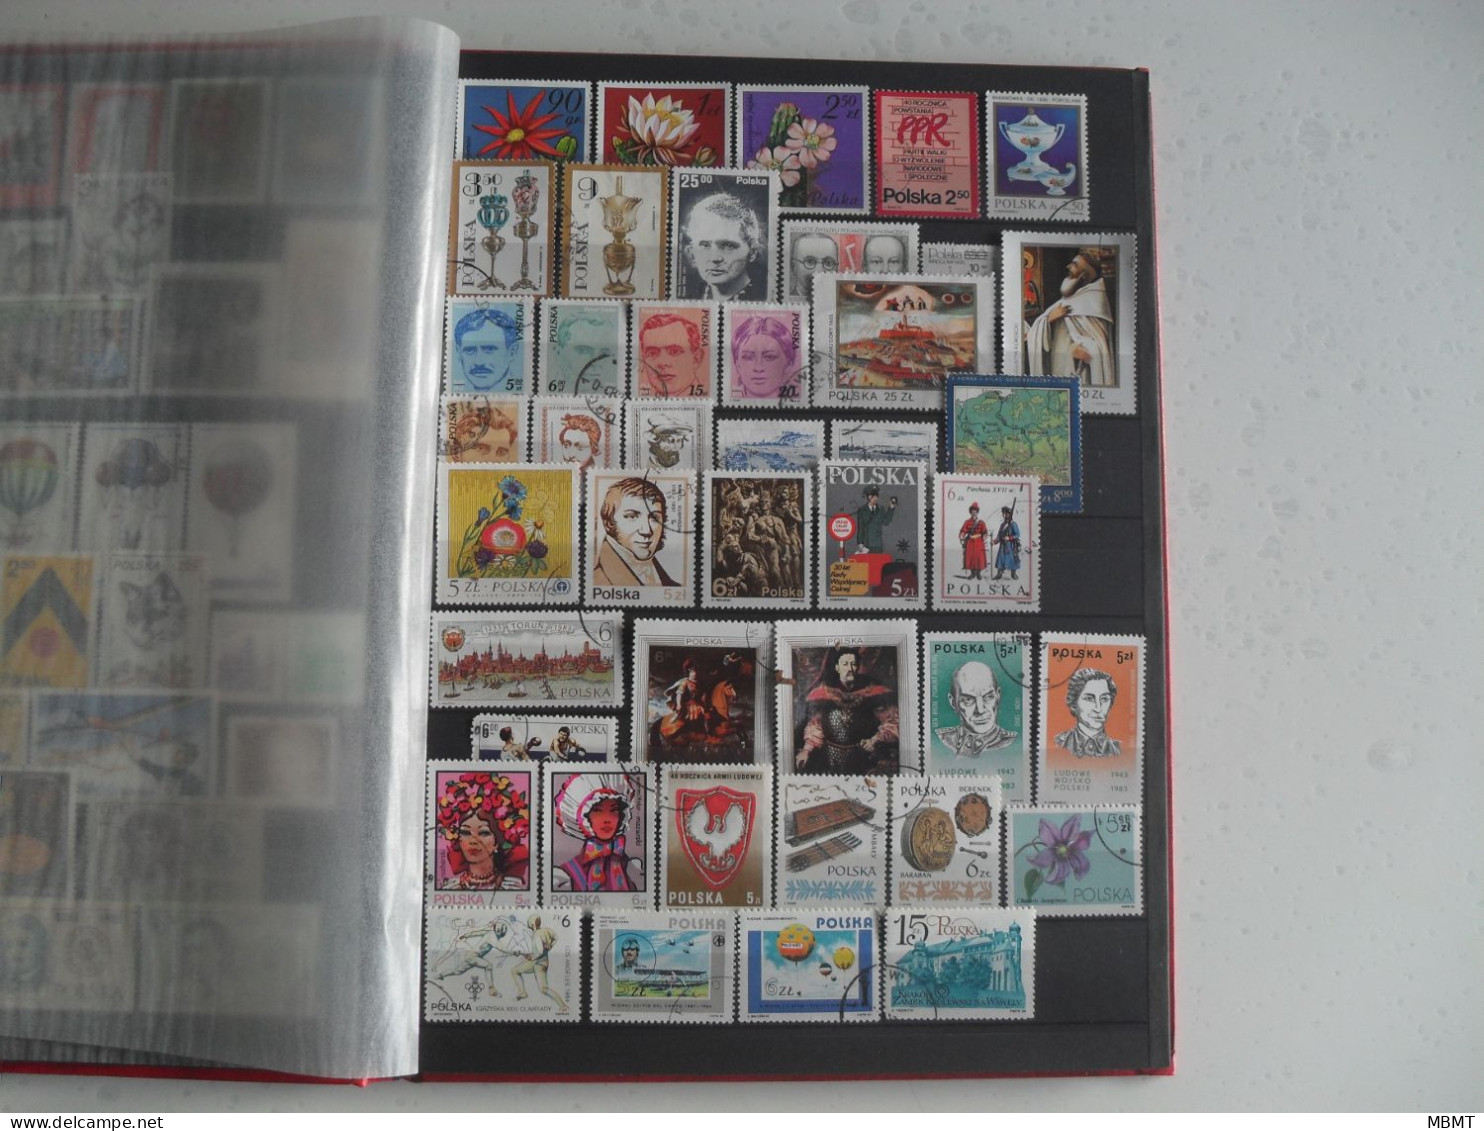 Album N°23 - année 1985 à l'année 1998 - Collections timbres oblitéré Pologne -